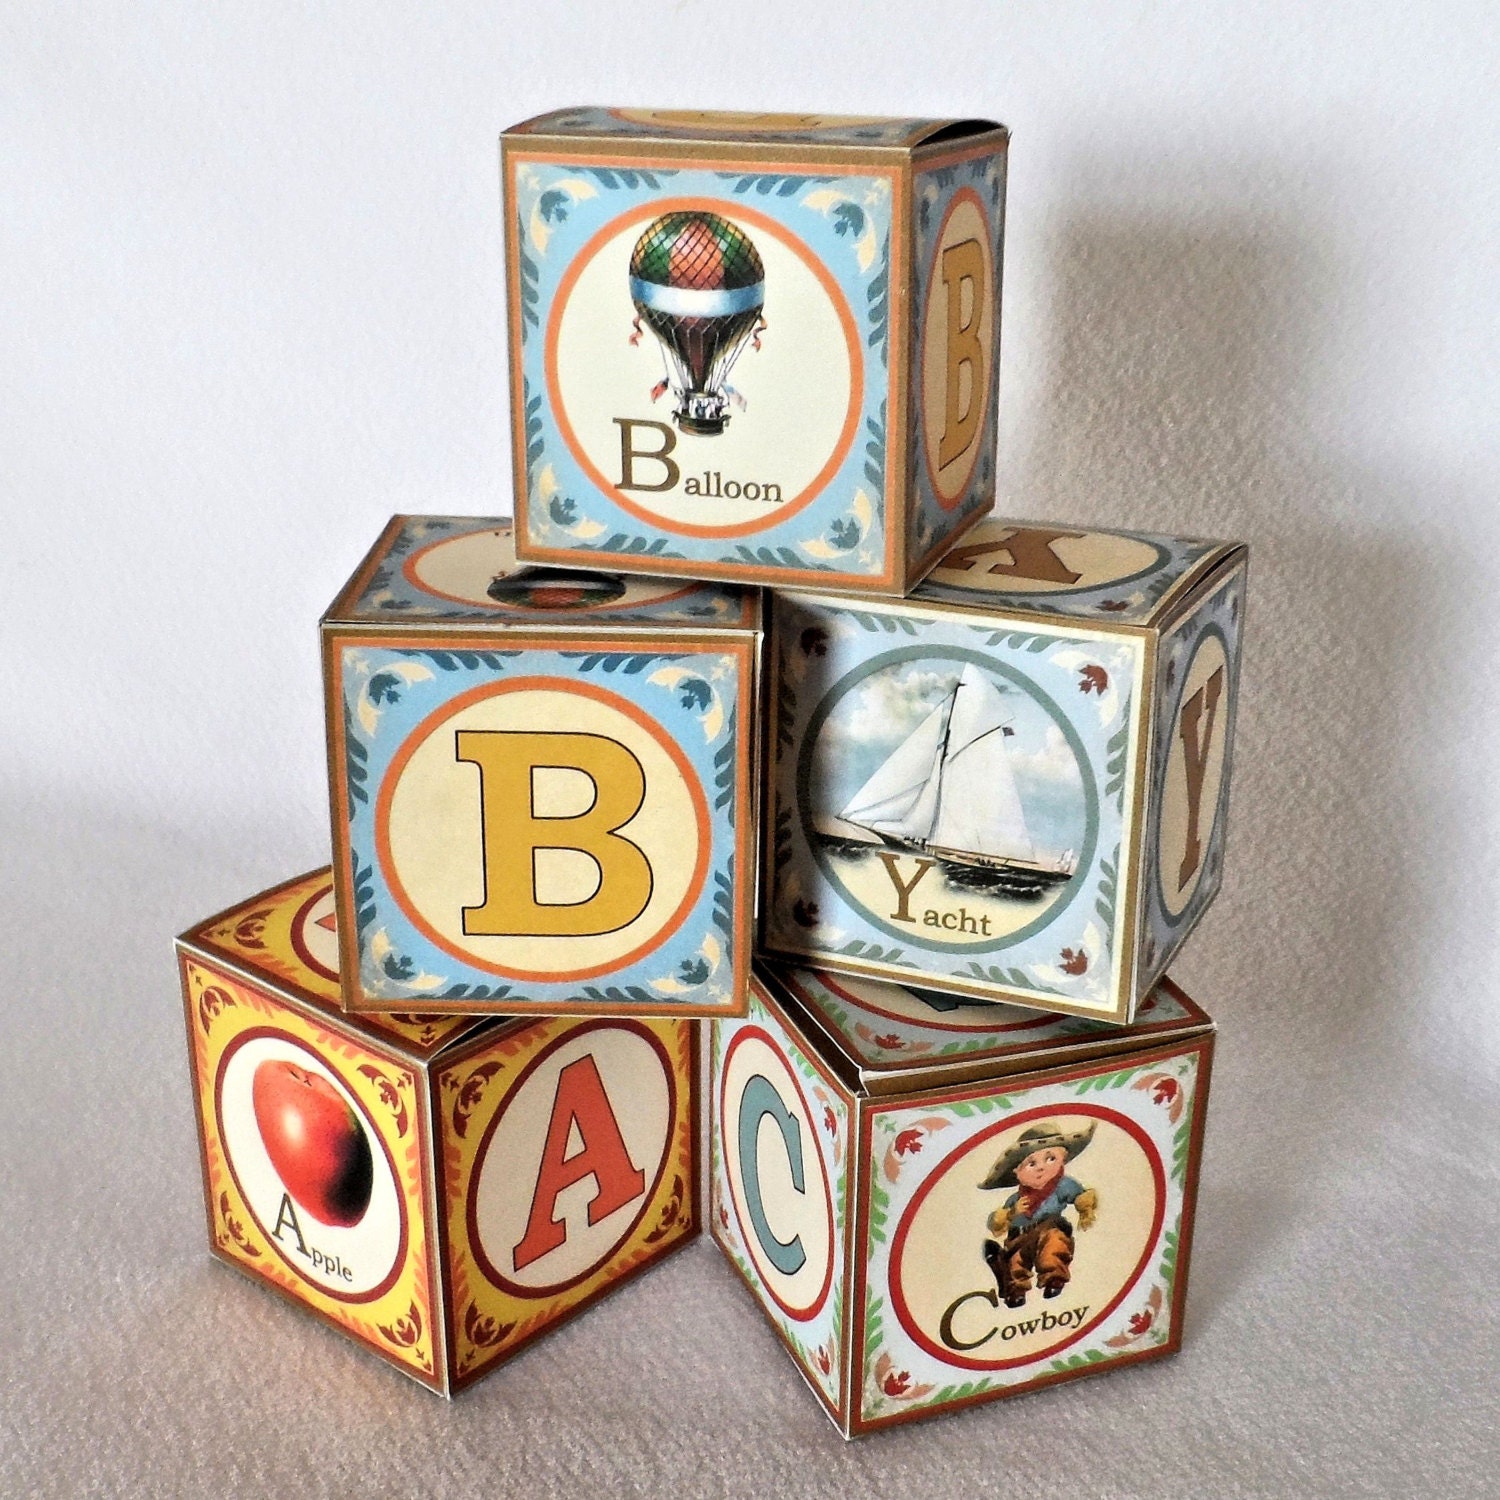 Baby Blocks Alphabet (Free Printable Letters & Numbers) – DIY